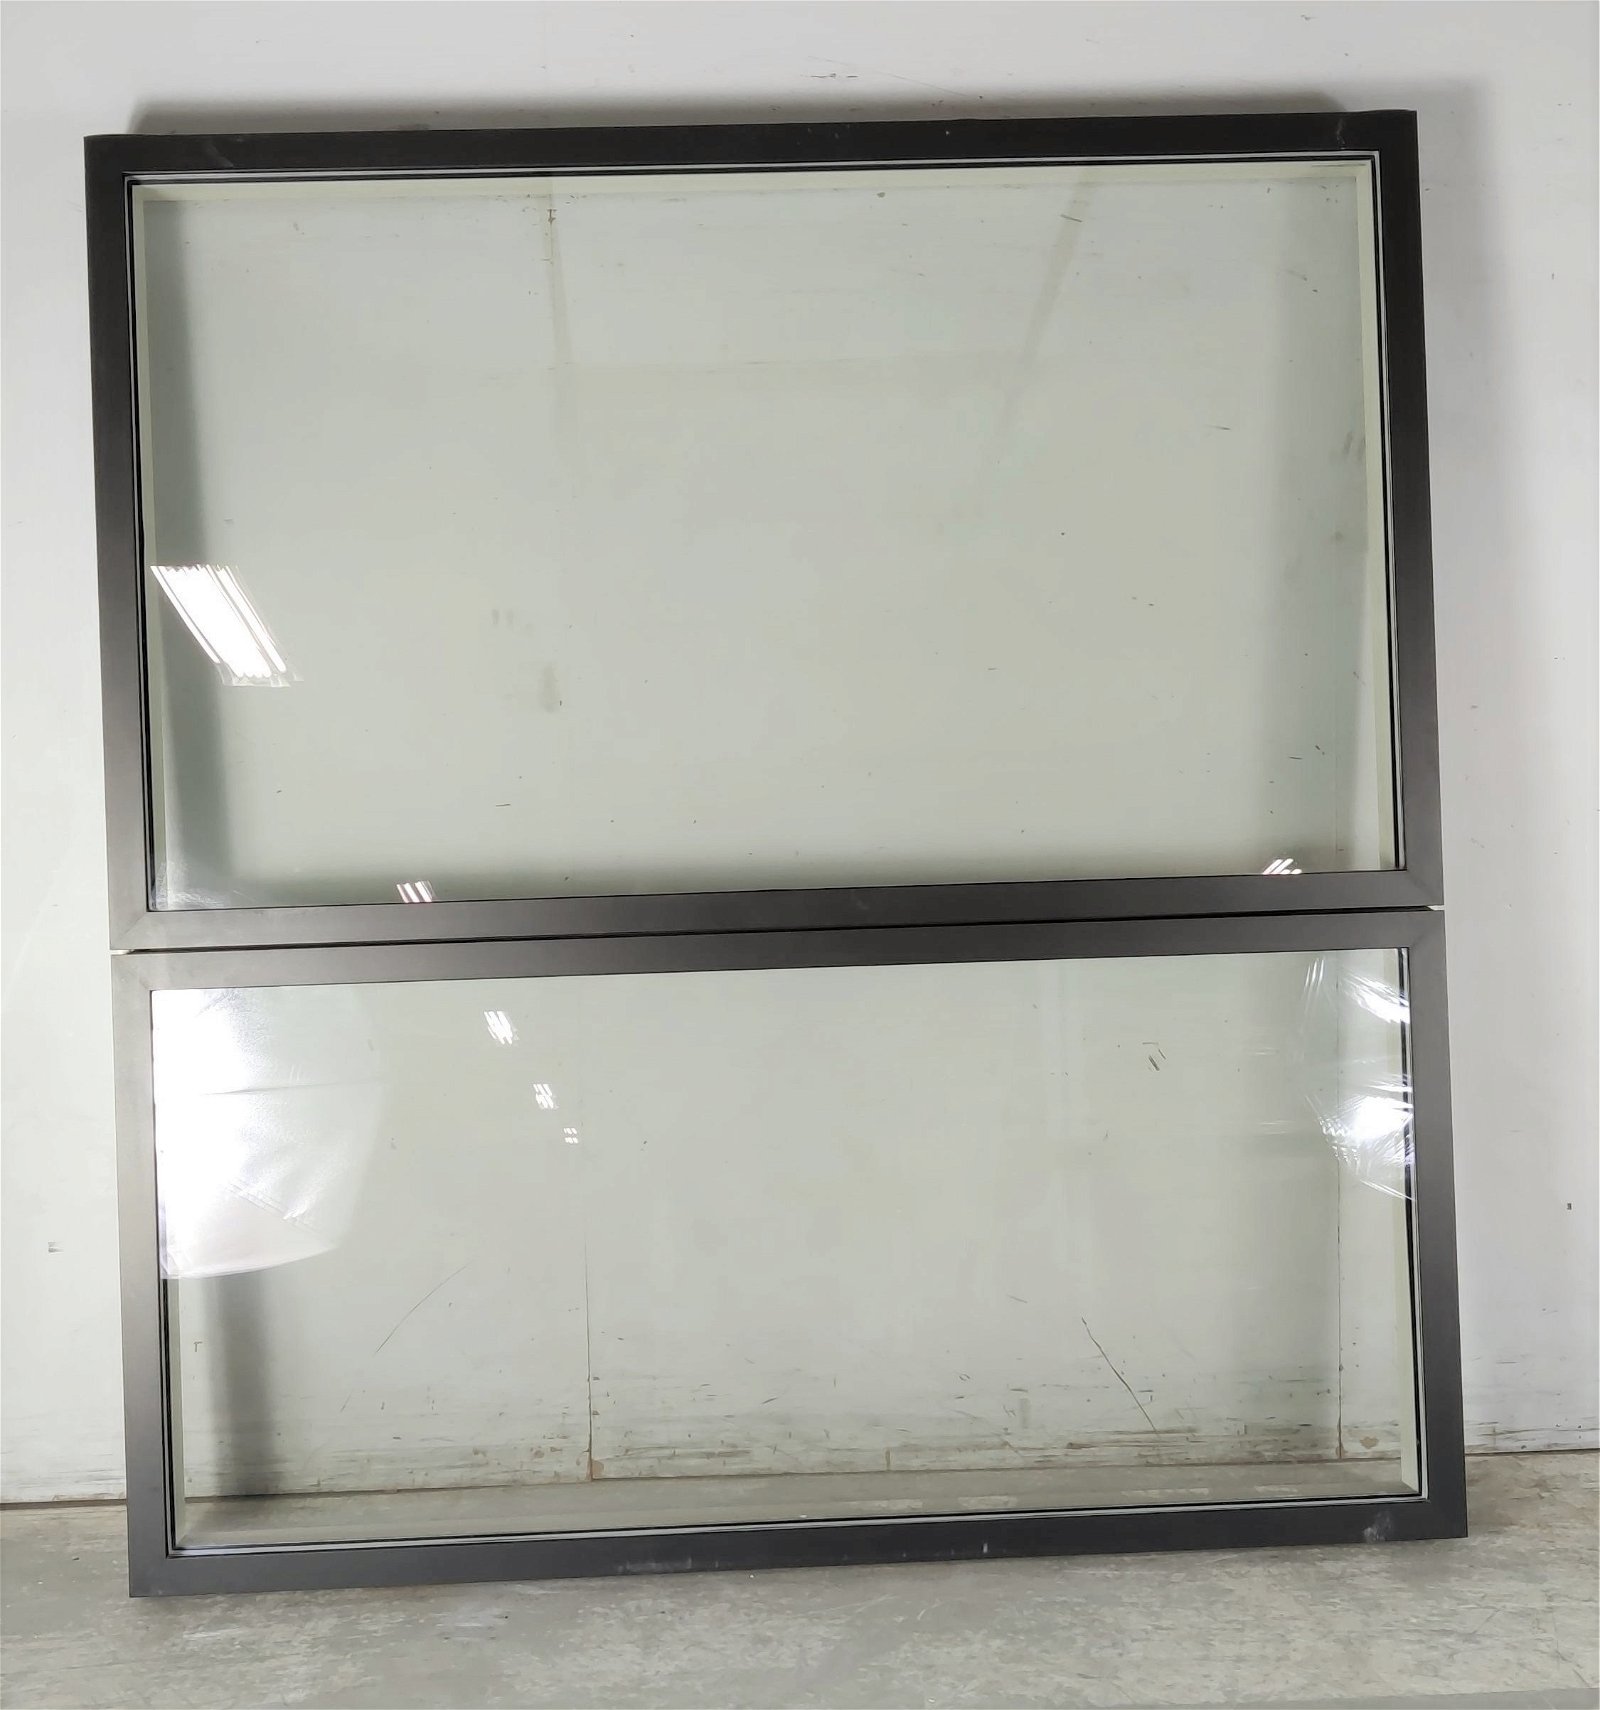 Fastkarm vindue fra Velfac, Klar glas, Træ/alu, G60 granit antracit